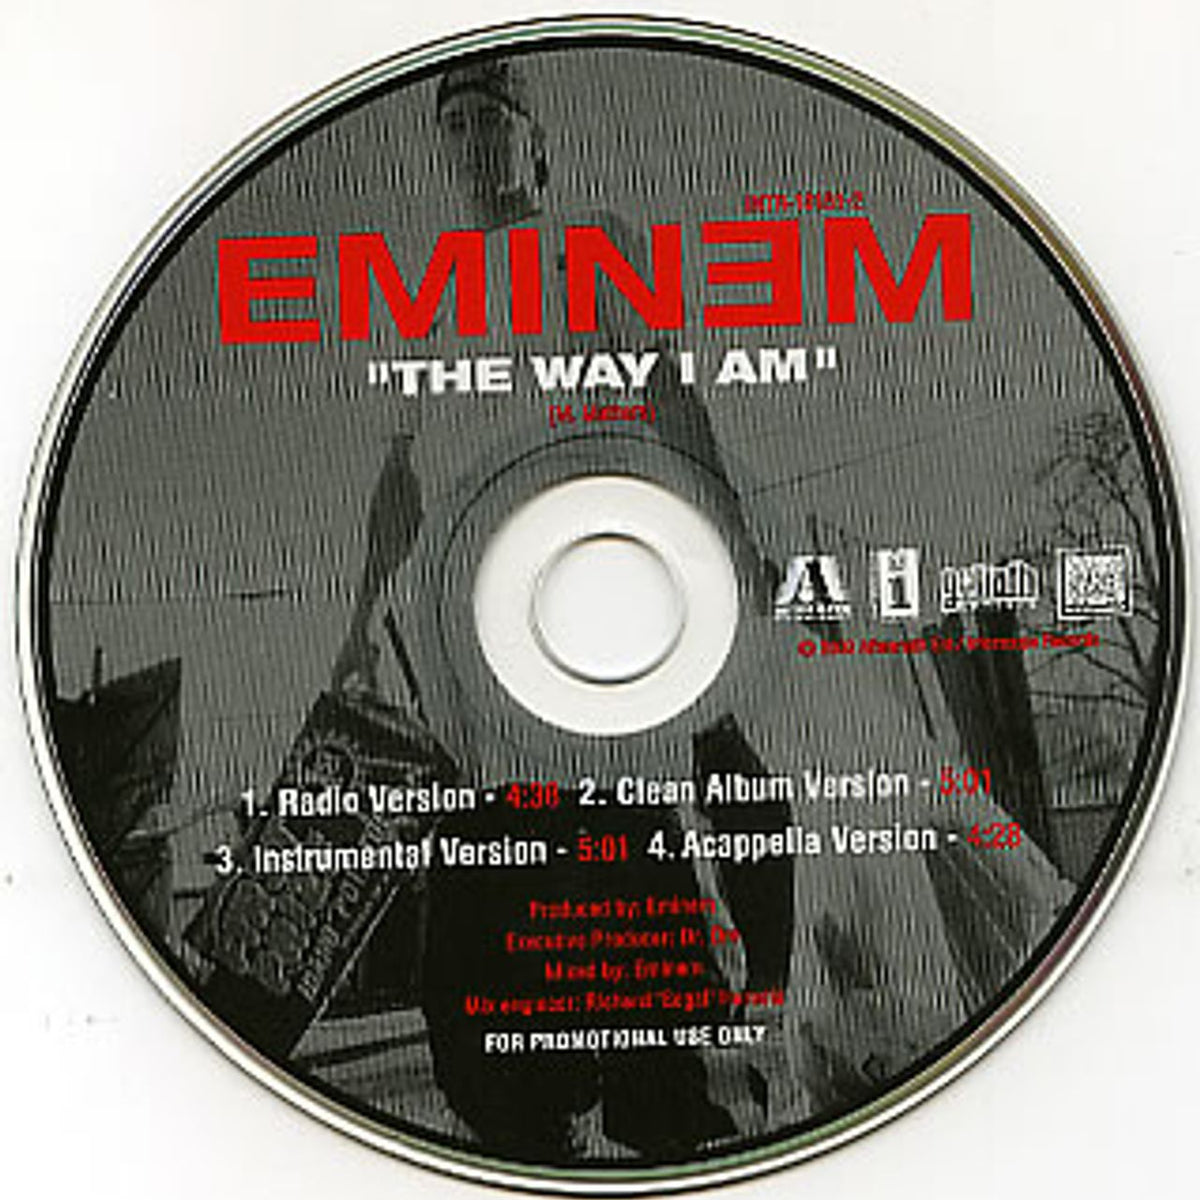 Eminem The Way I Am US Promo CD single — RareVinyl.com